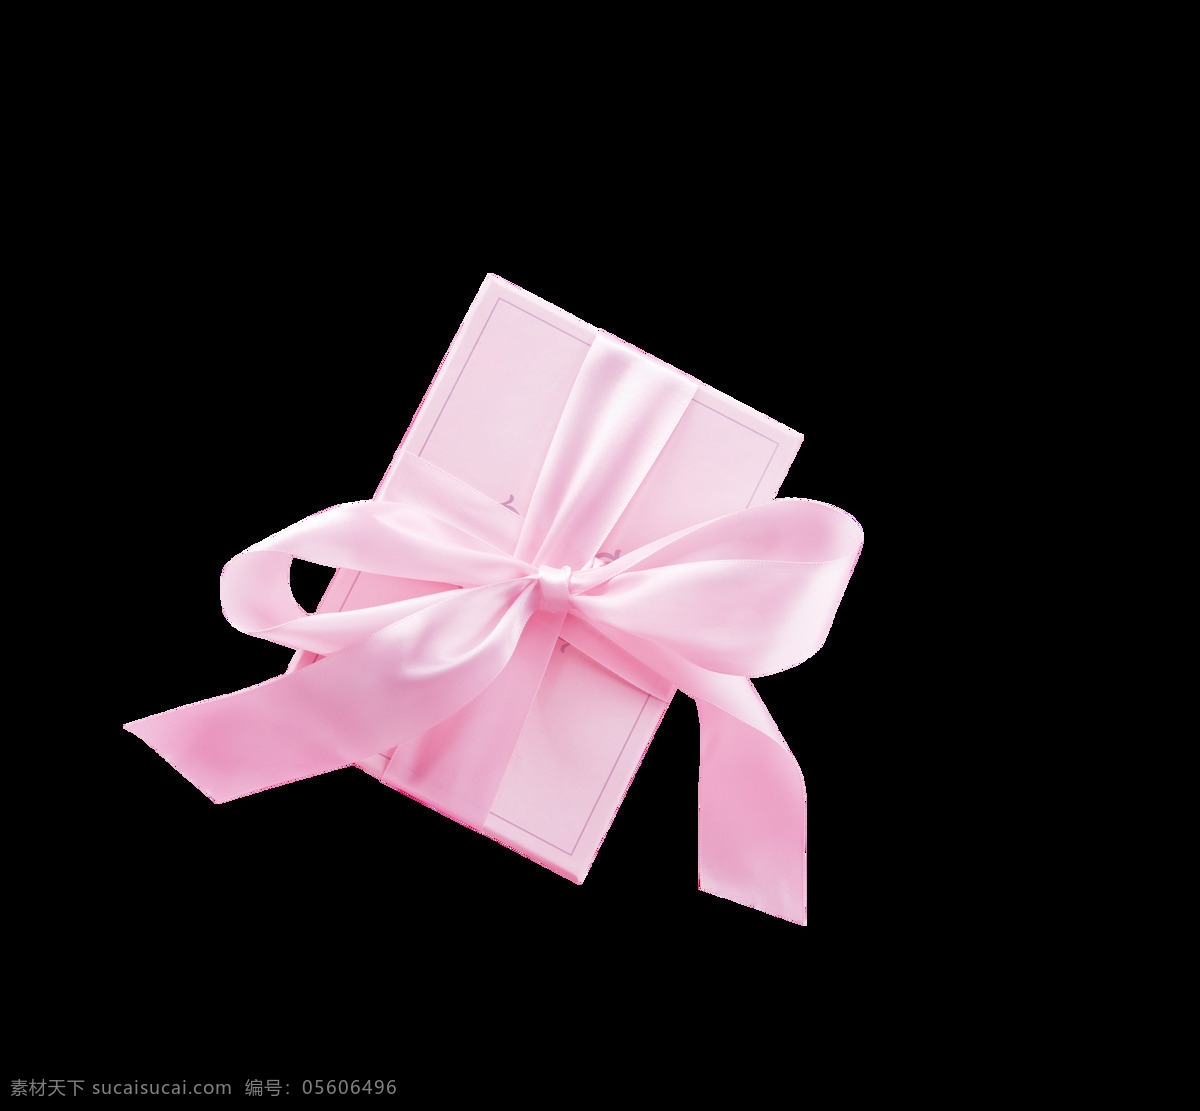 粉色 唯美 质感 礼盒 装饰 礼物 蝴蝶结